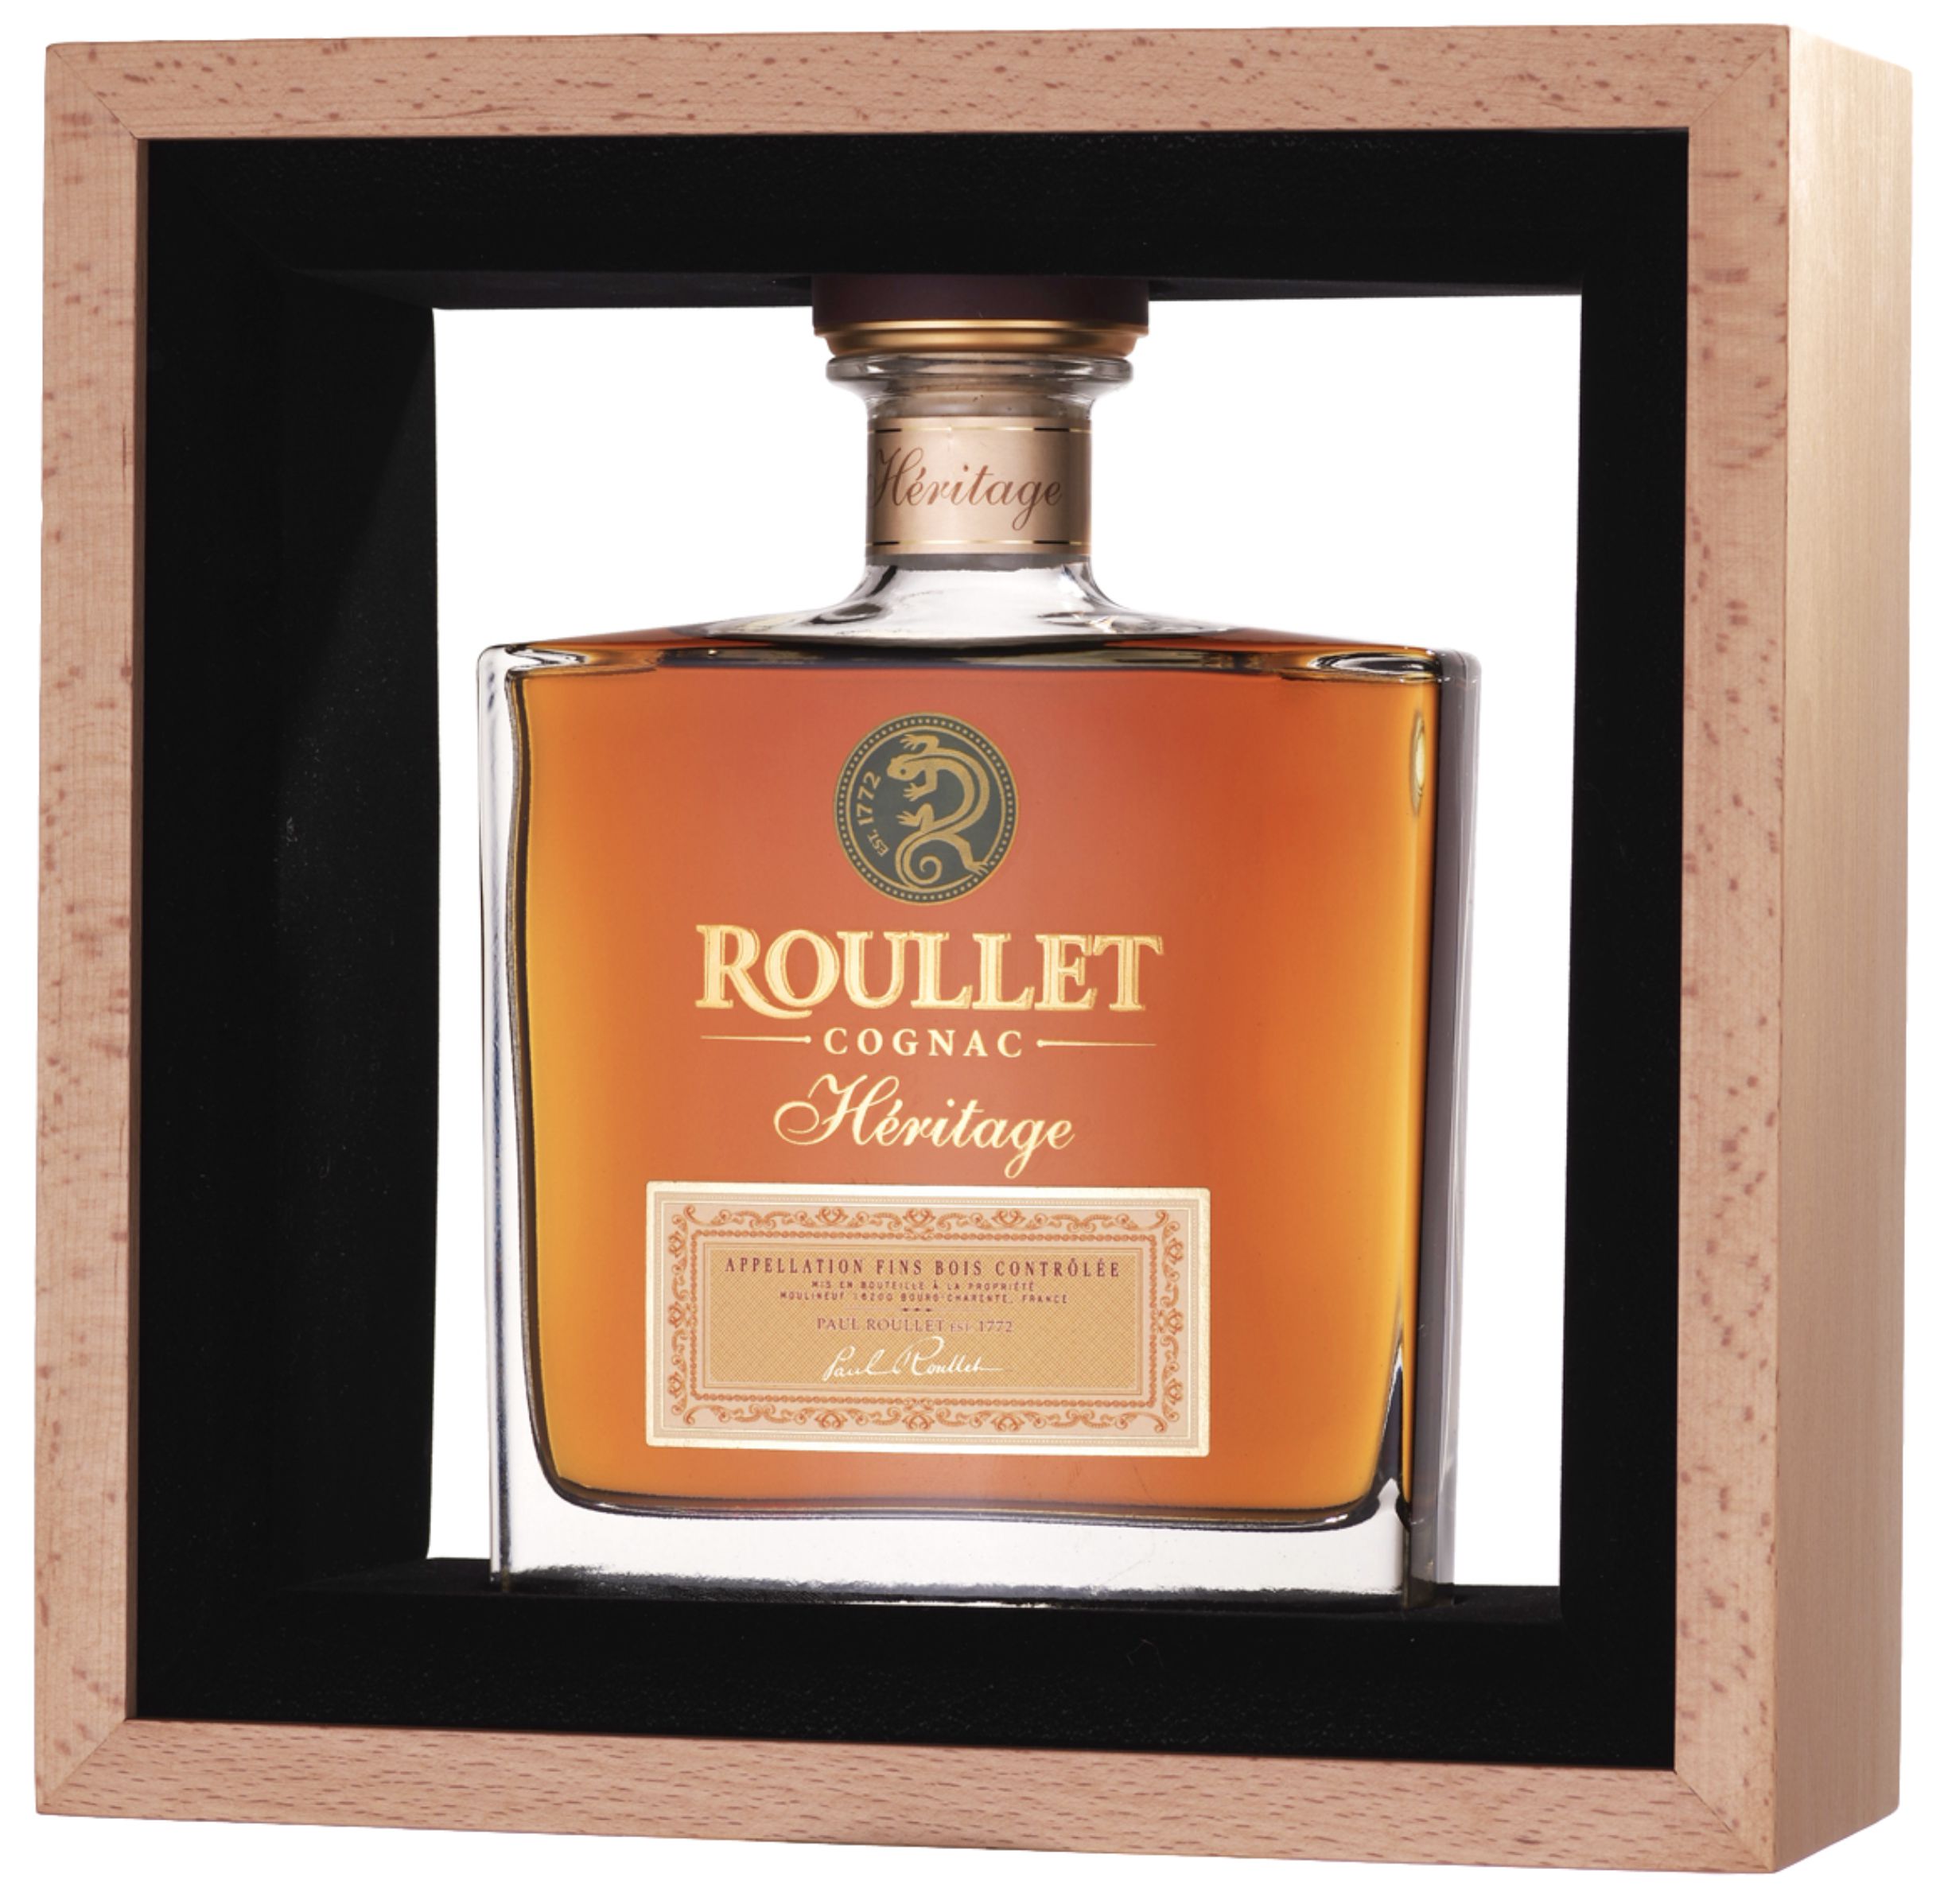 Roullet cognac цена. Рулле Эритаж фэн Буа. Рулле Эритаж фэн Буа в подарочной упаковке. Коньяк Roulette Cognac. Roullet Cognac v.s.